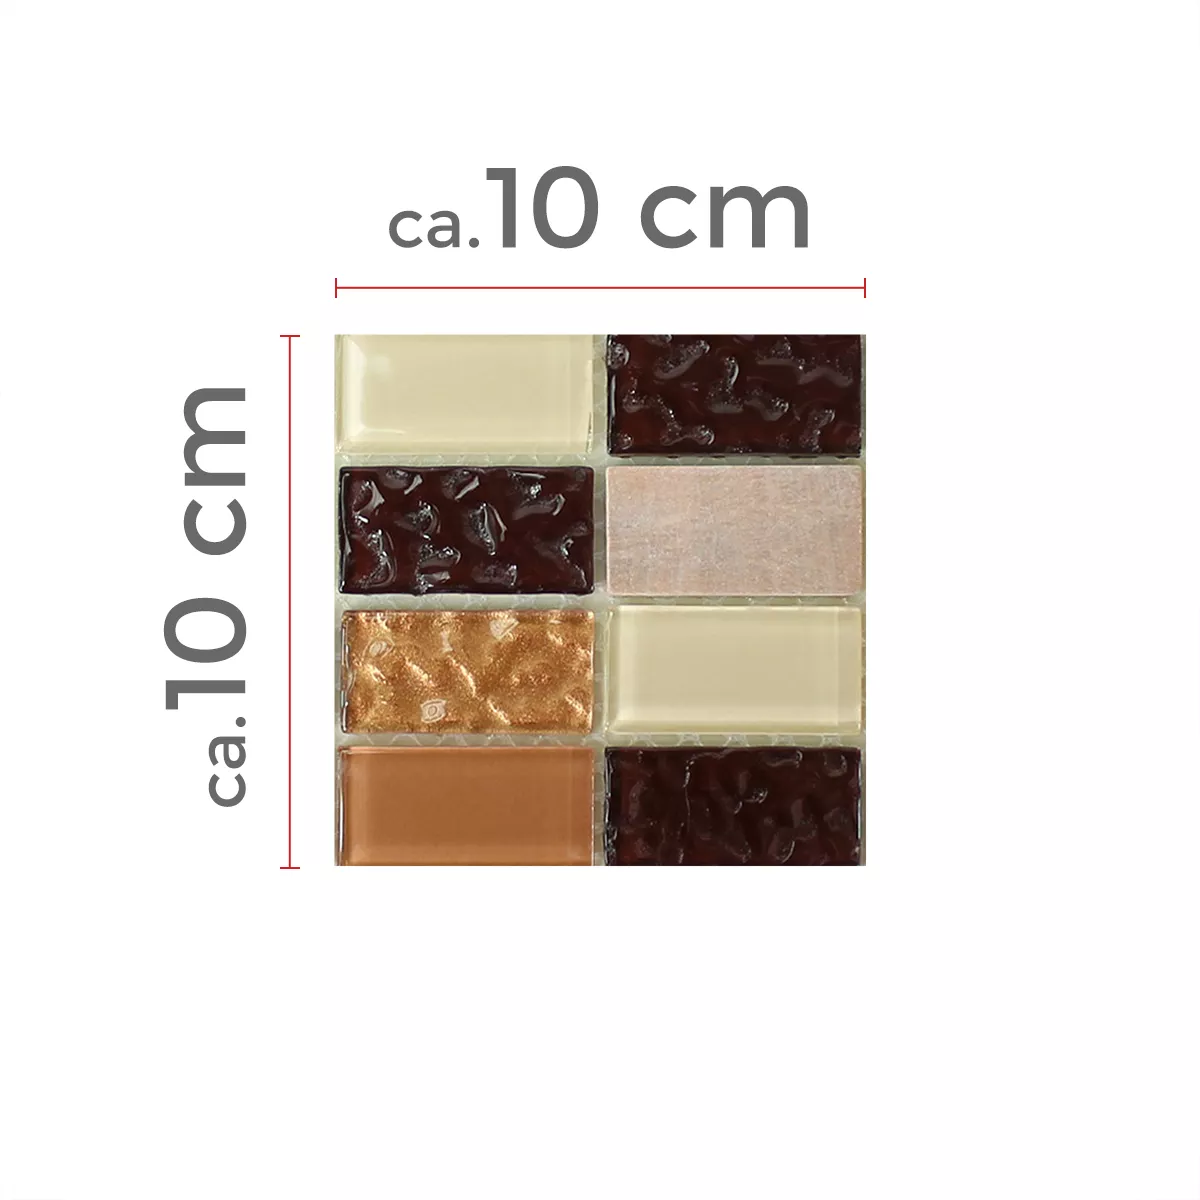 Muster von Selbstklebende Mosaikfliesen Naturstein Glas Beige Braun Brick